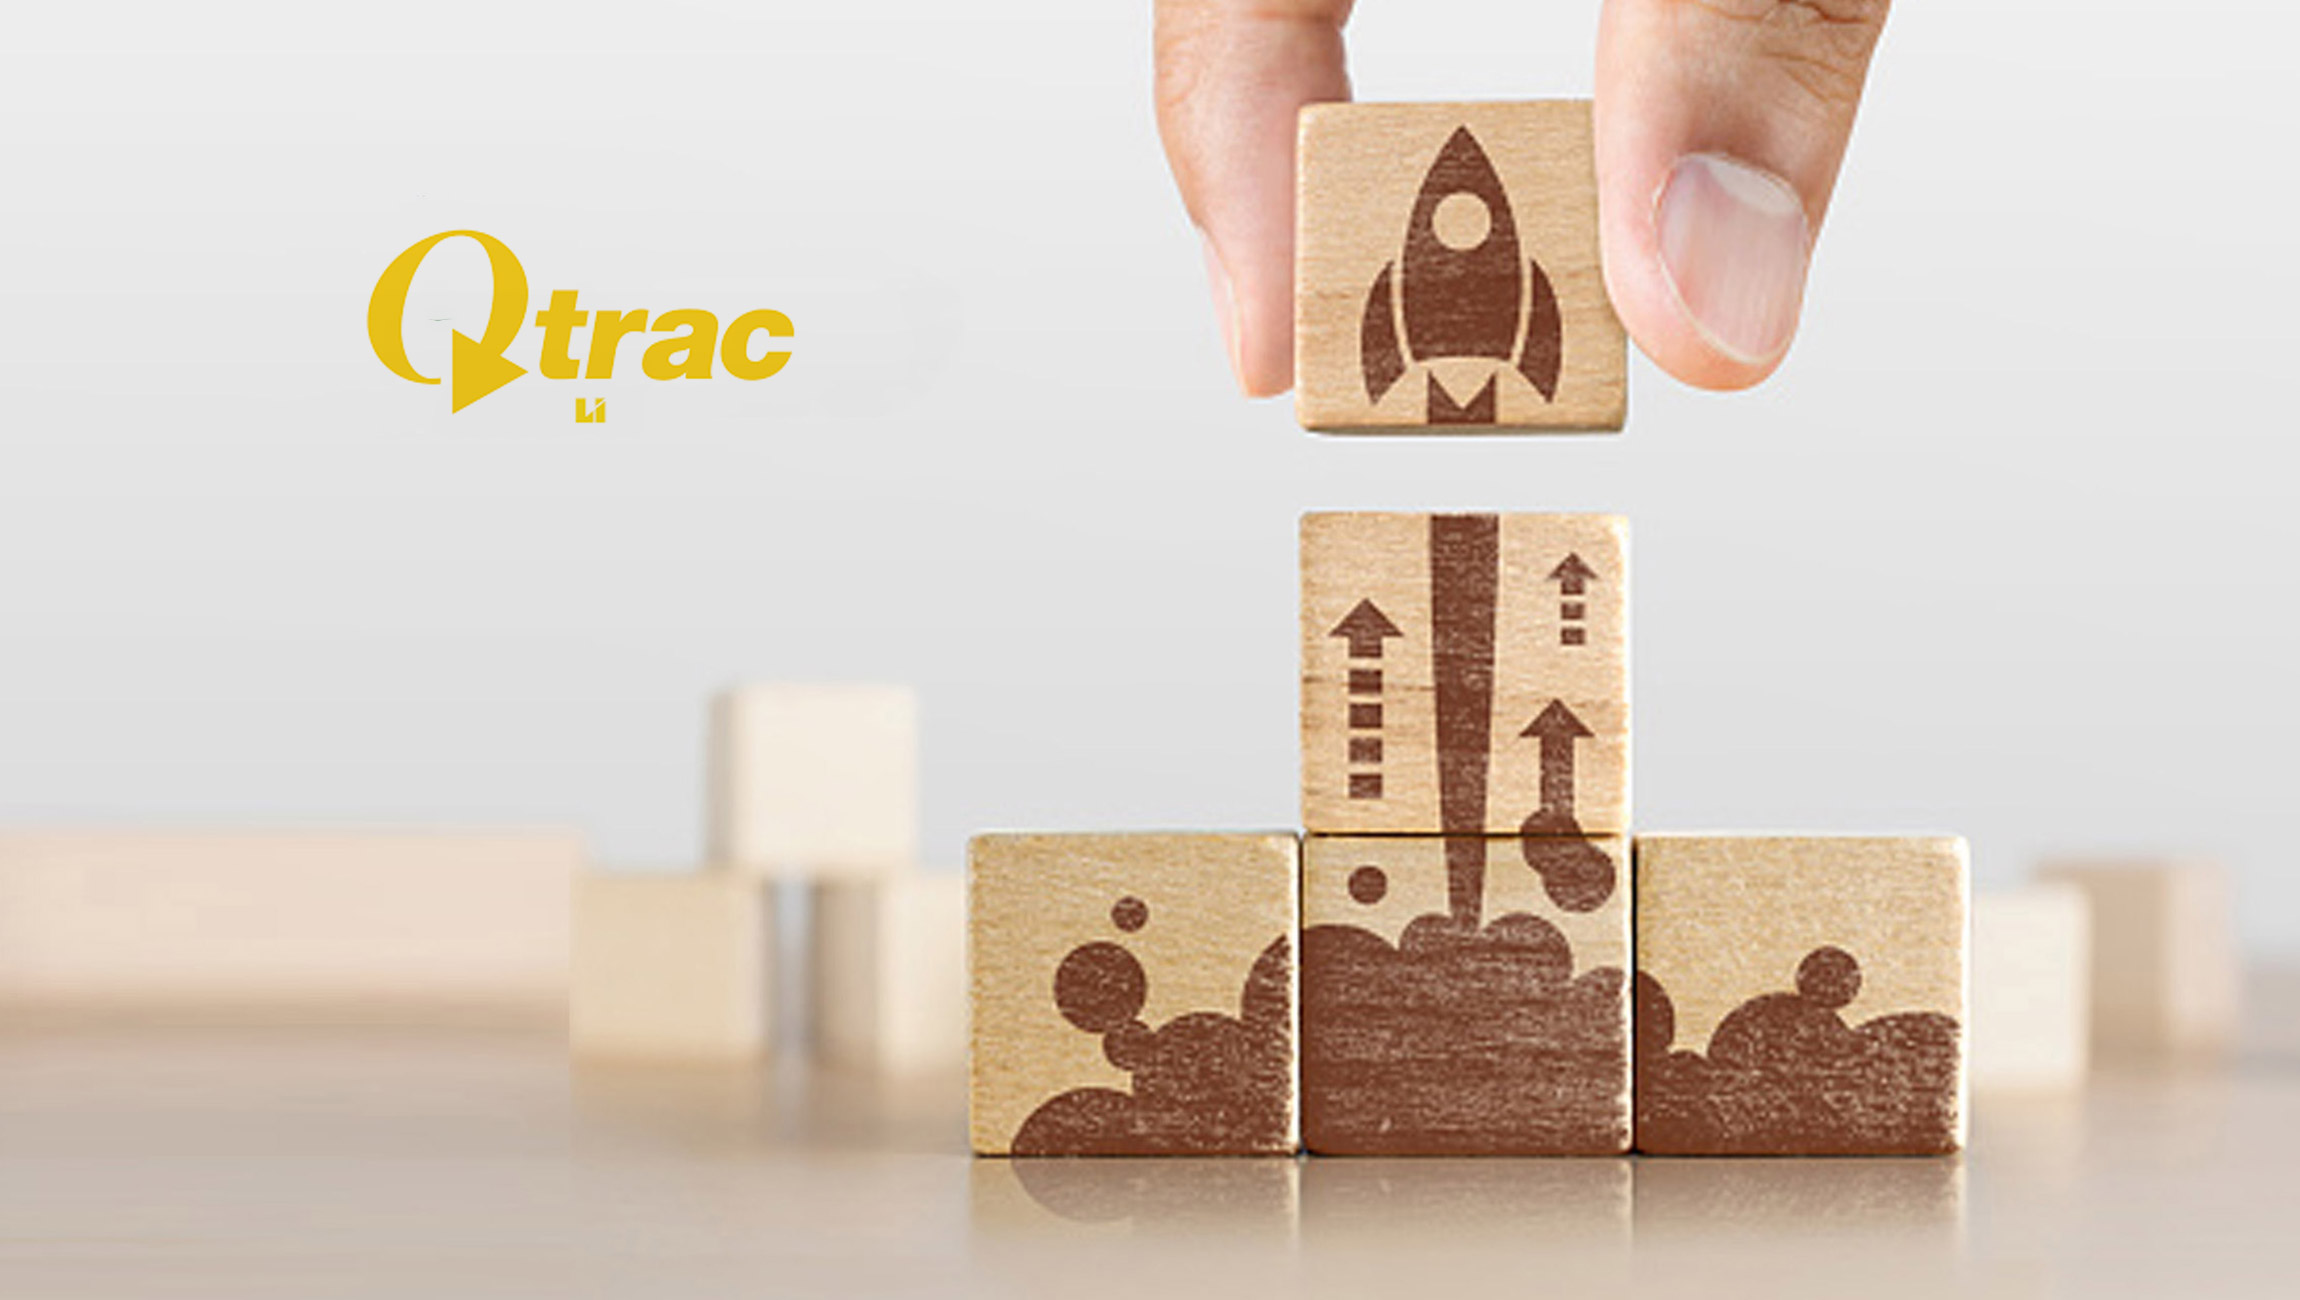 Qtrac® Announces Unique Queue Management Continuing Education Course